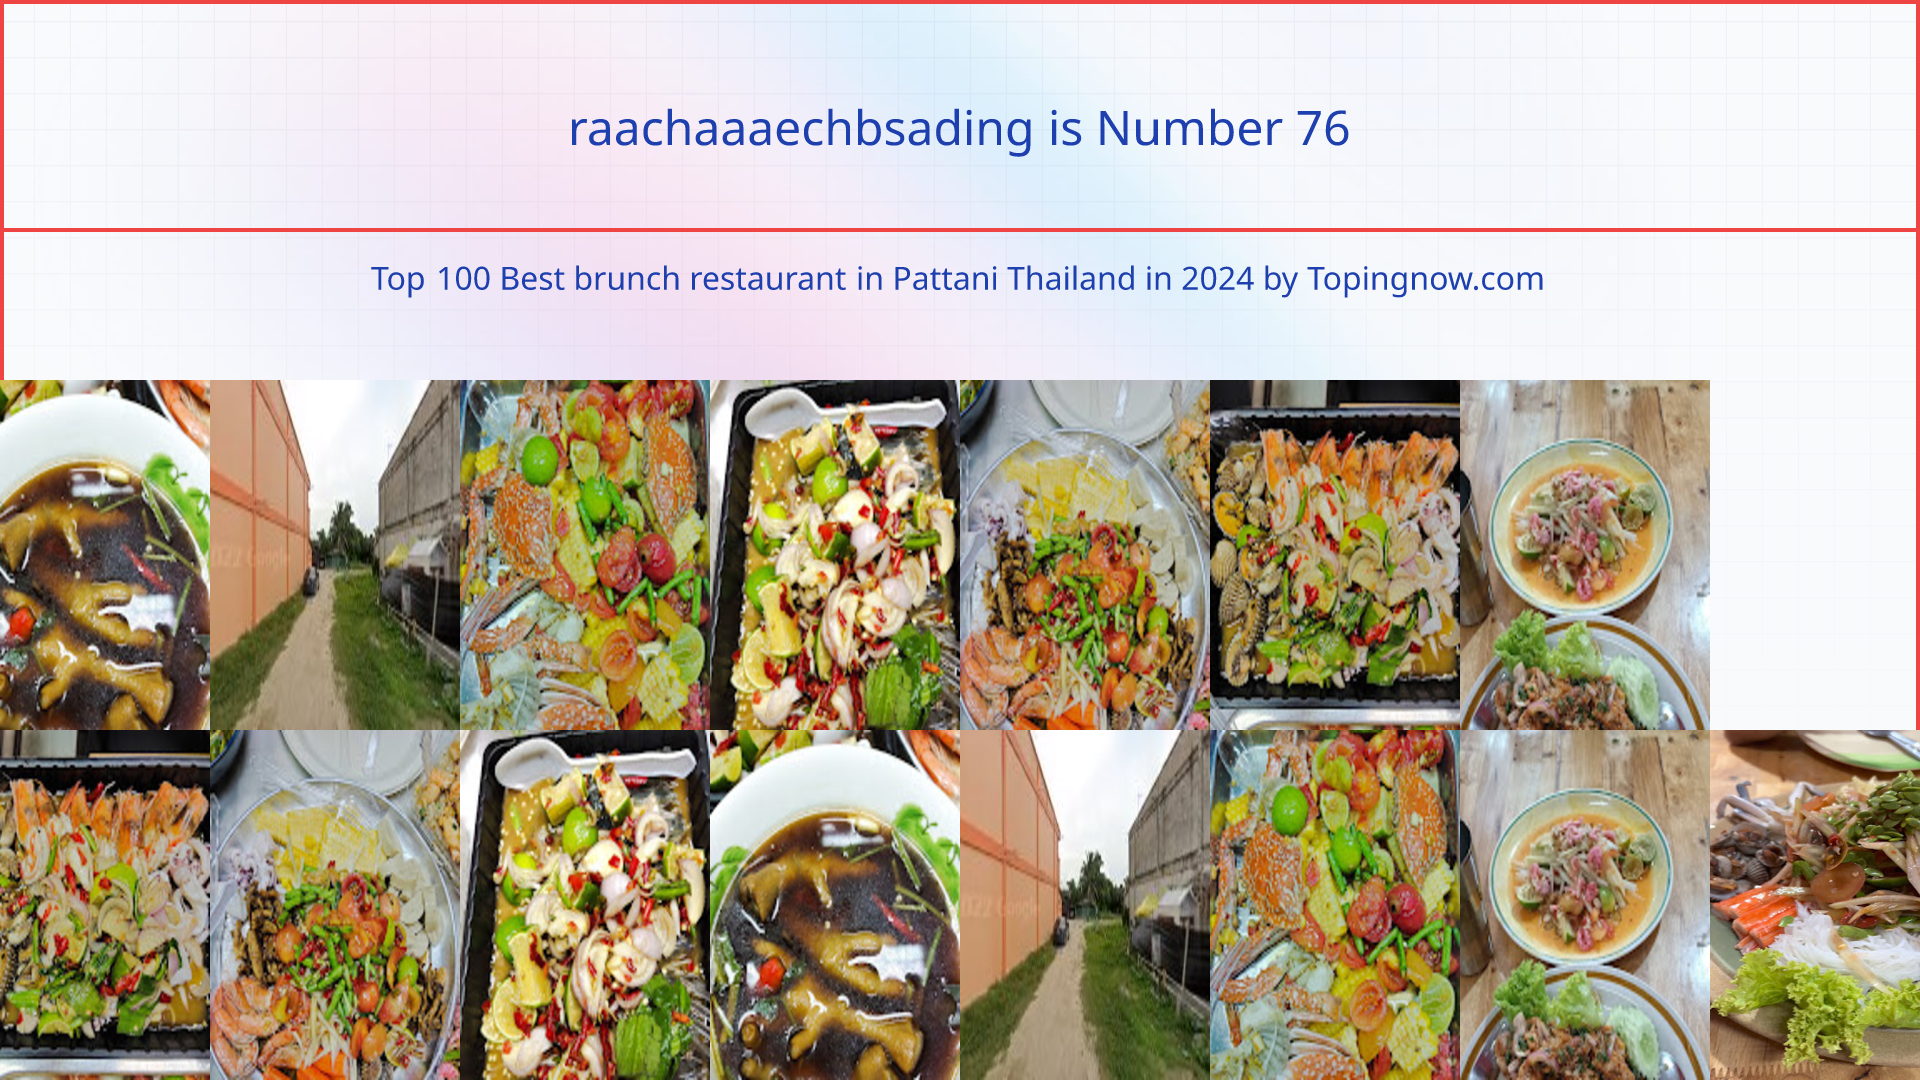 raachaaaechbsading: Top 100 Best brunch restaurant in Pattani Thailand in 2024